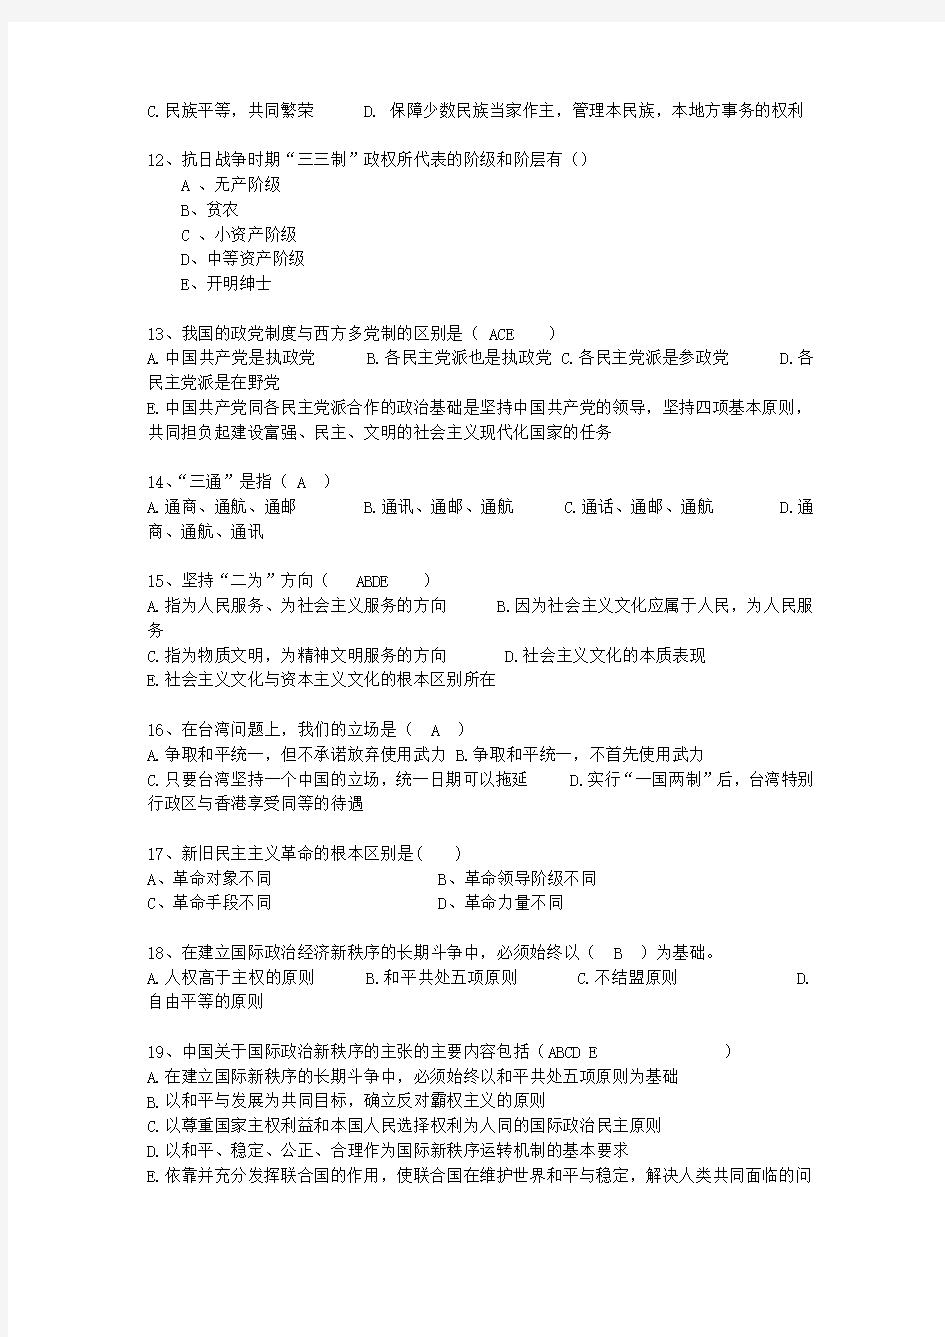 2014河北省毛概经典复习资料最新考试试题库(完整版)